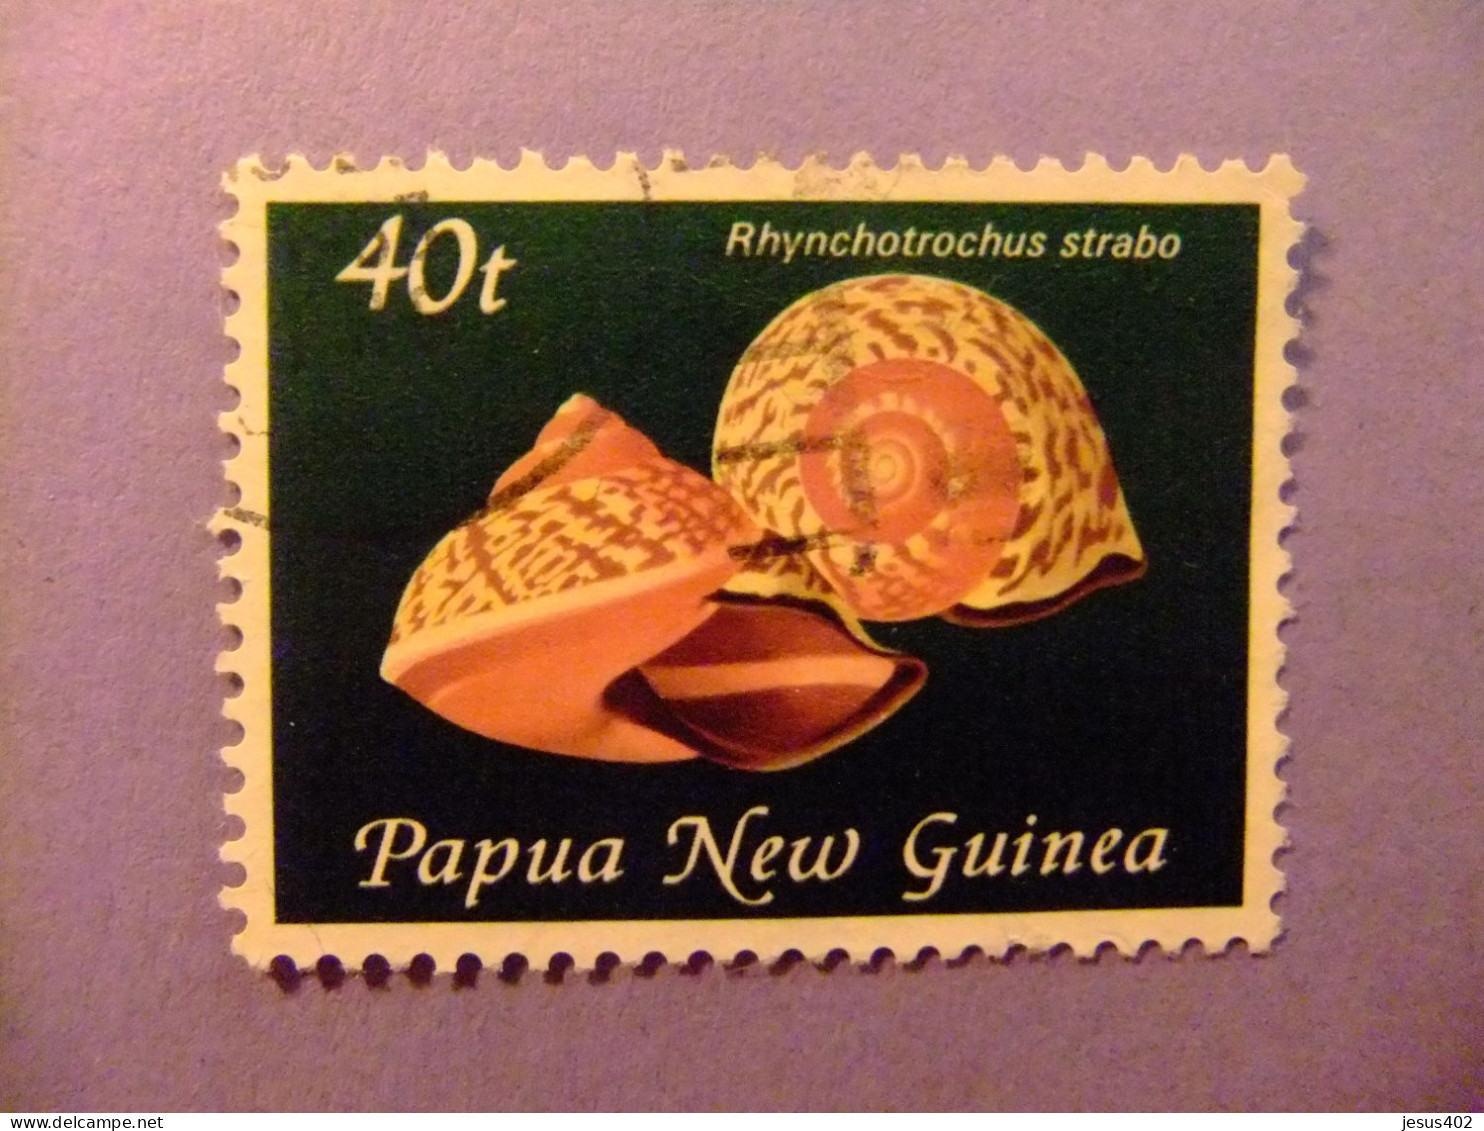 52 PAPUA NEW GUINEA / NUEVA GUINEA 1981 / FAUNA / YVERT 425 FU - Papua-Neuguinea